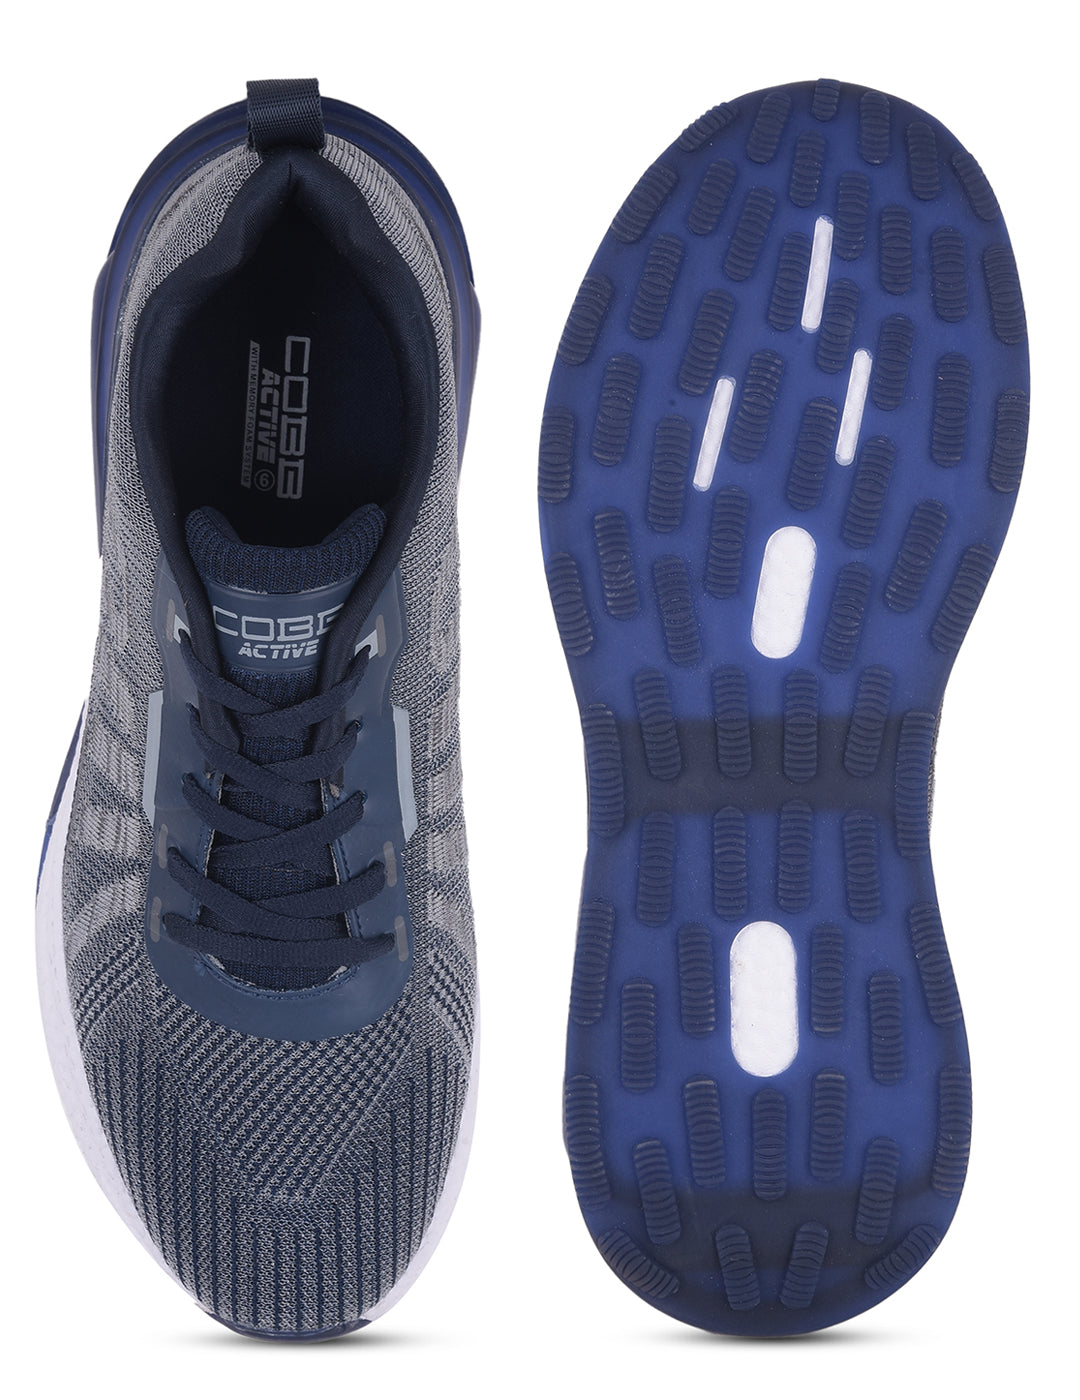 cobb active navy grey men's running shoes